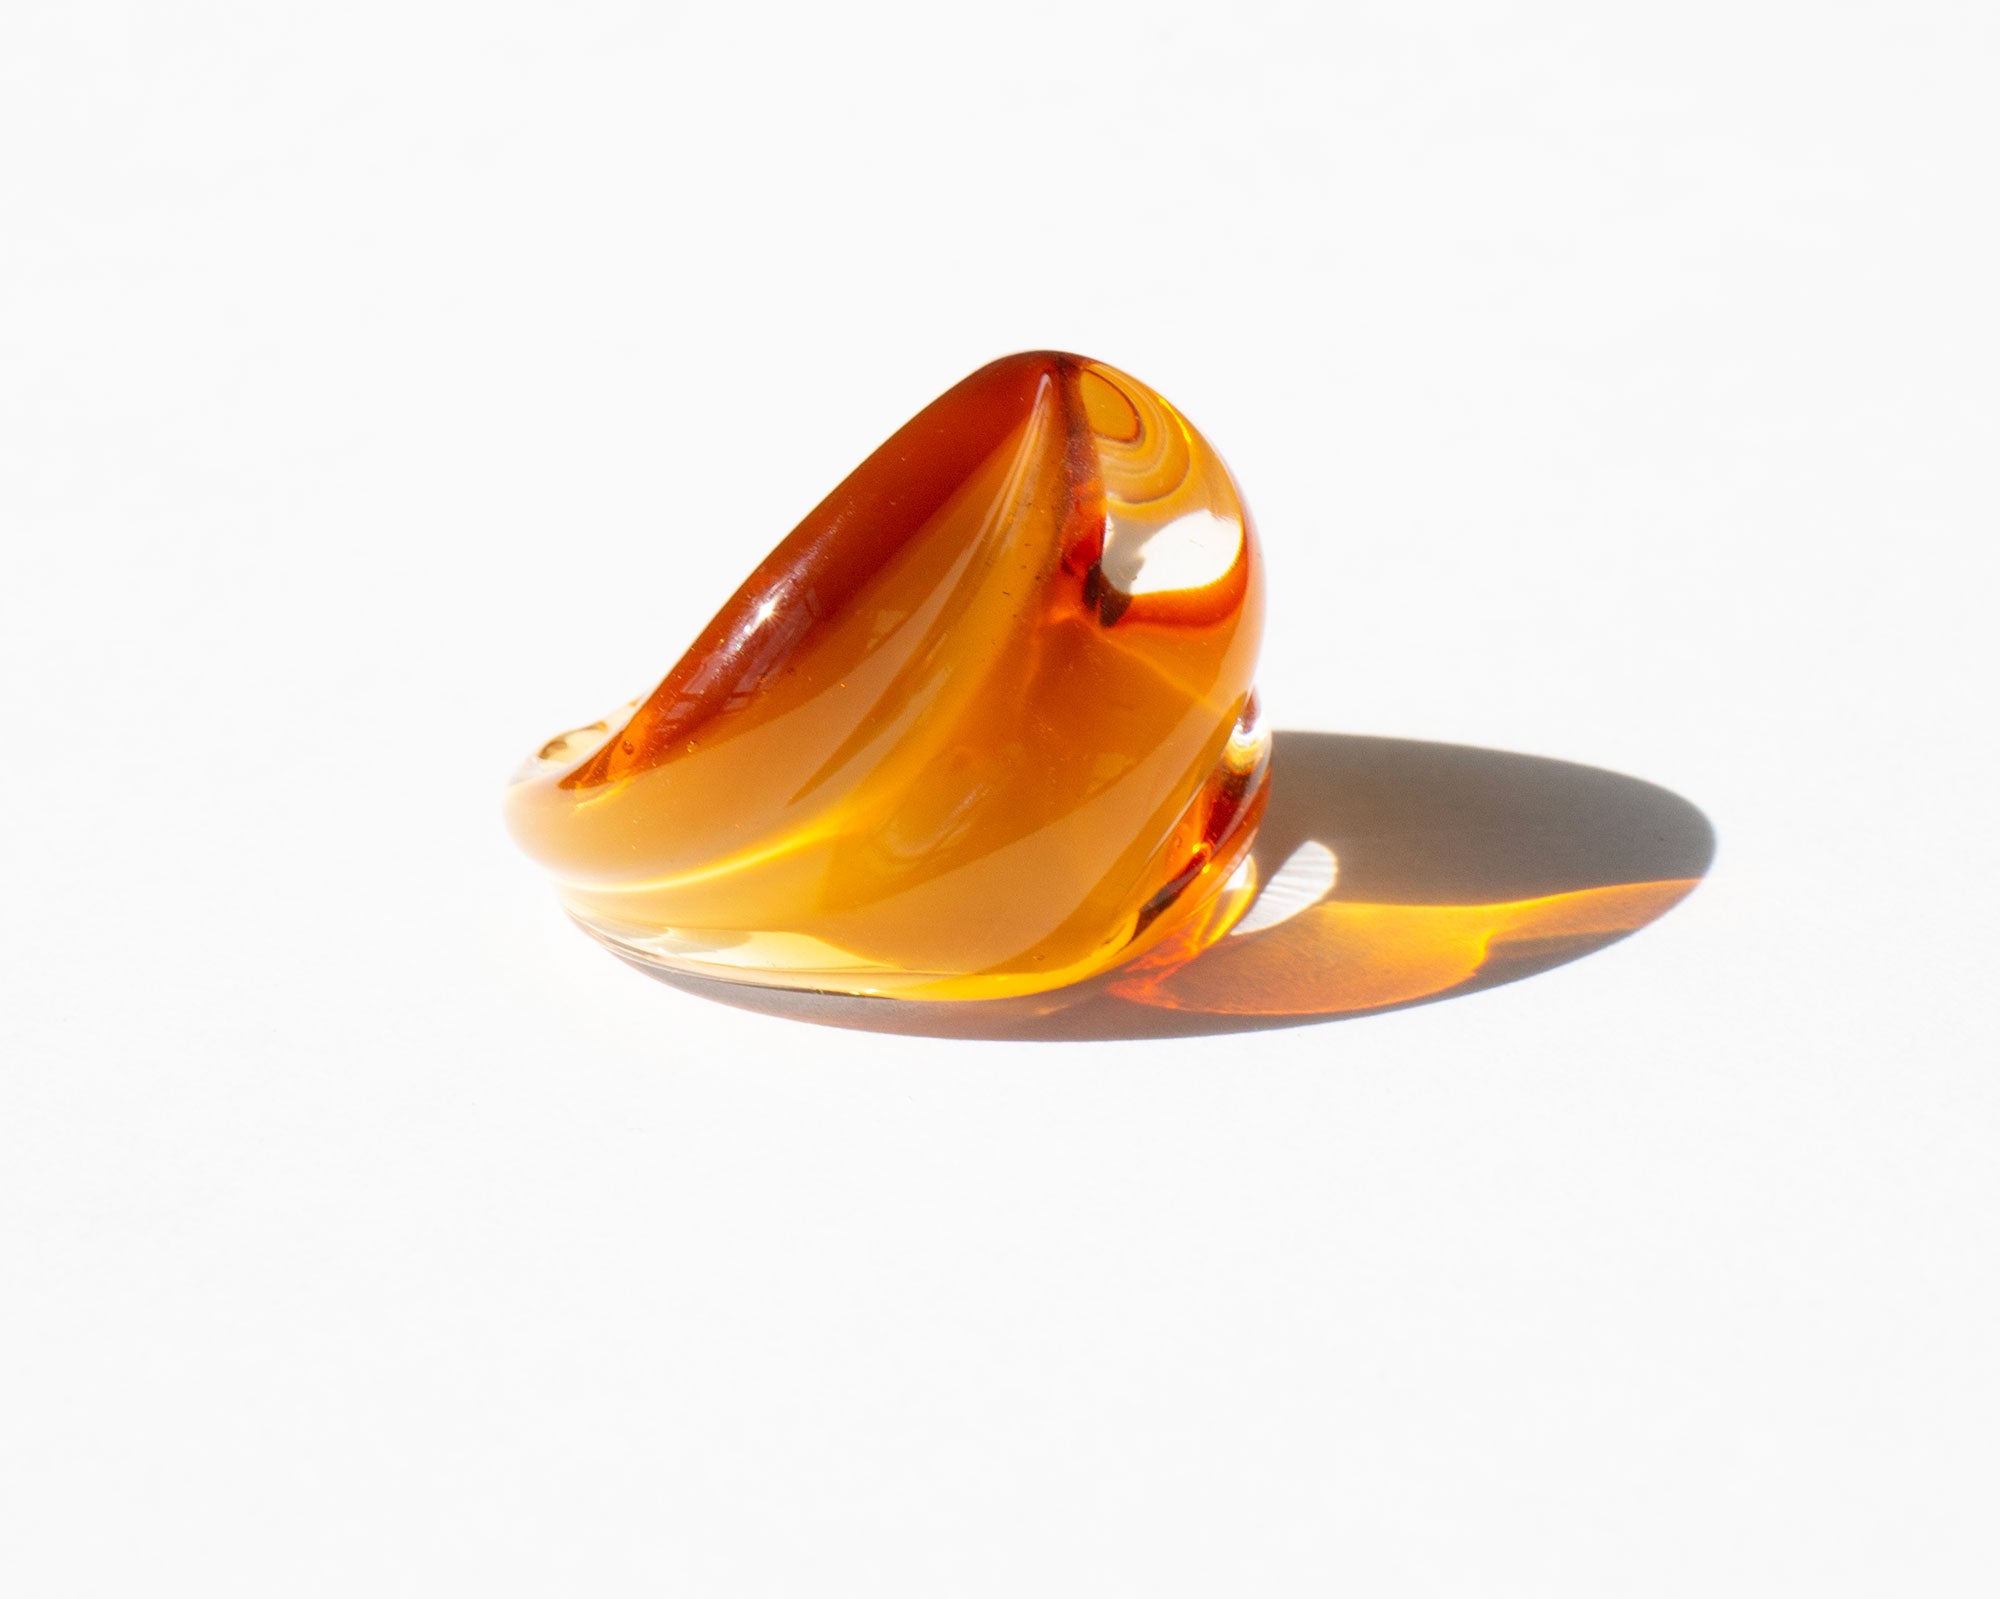 Honey Art Glass Ring